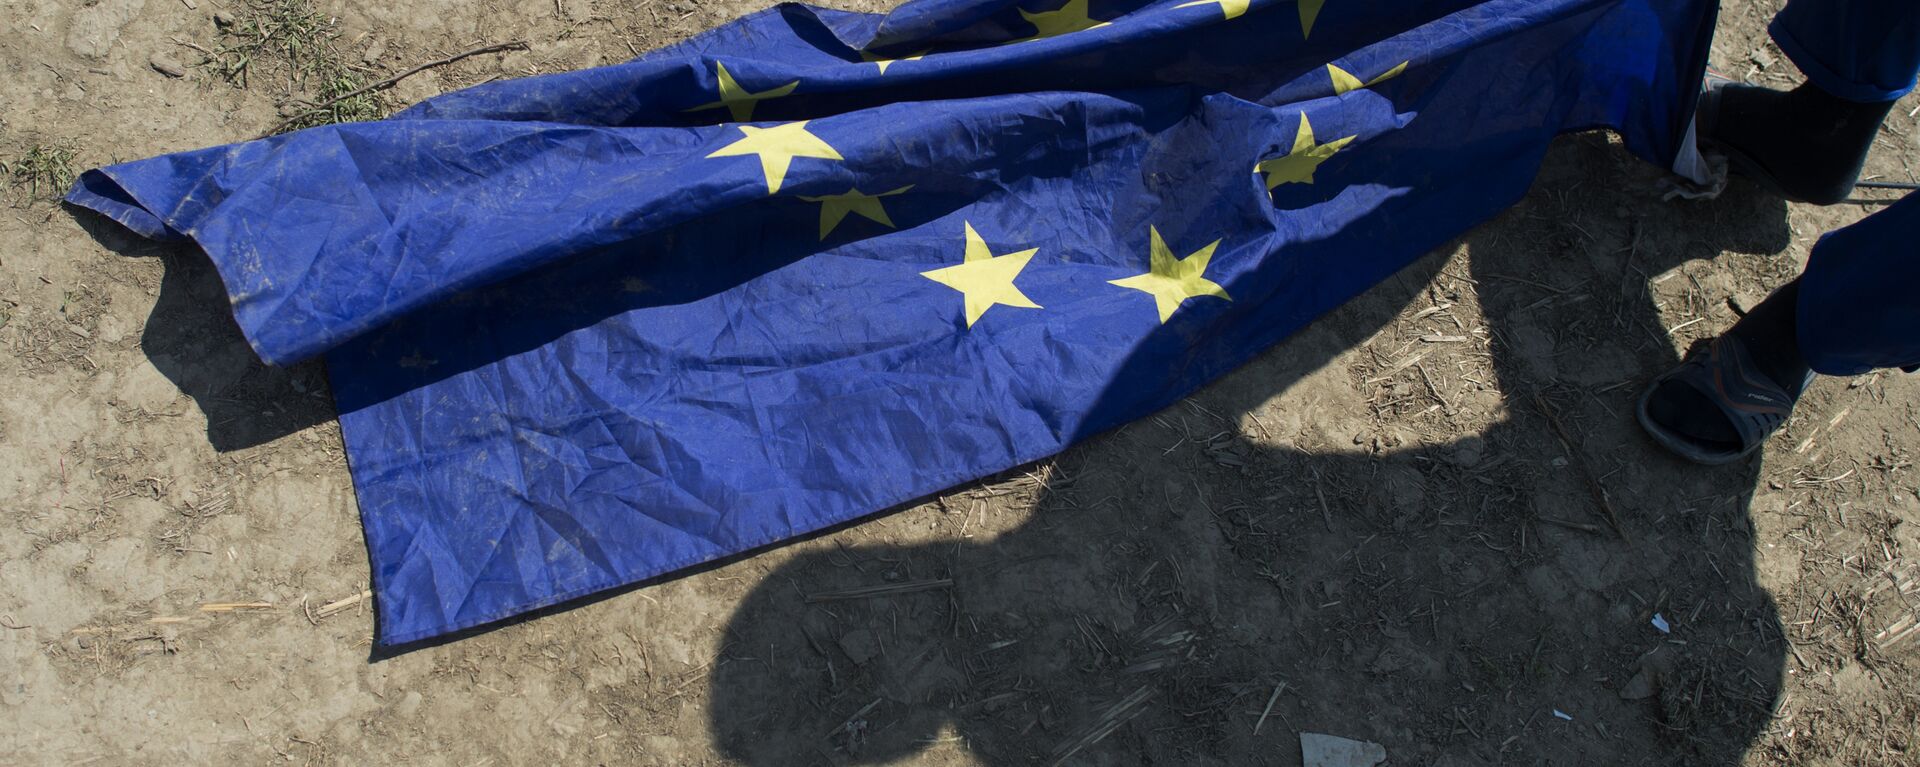 Un migrante de Afganistán toma una bandera de la UE junto a su tienda de campaña en un campamento improvisado para inmigrantes y refugiados cerca de la aldea de Idomeni, no lejos de la frontera entre Grecia y Macedonia, el 1 de mayo de 2016. - Sputnik Mundo, 1920, 15.10.2023